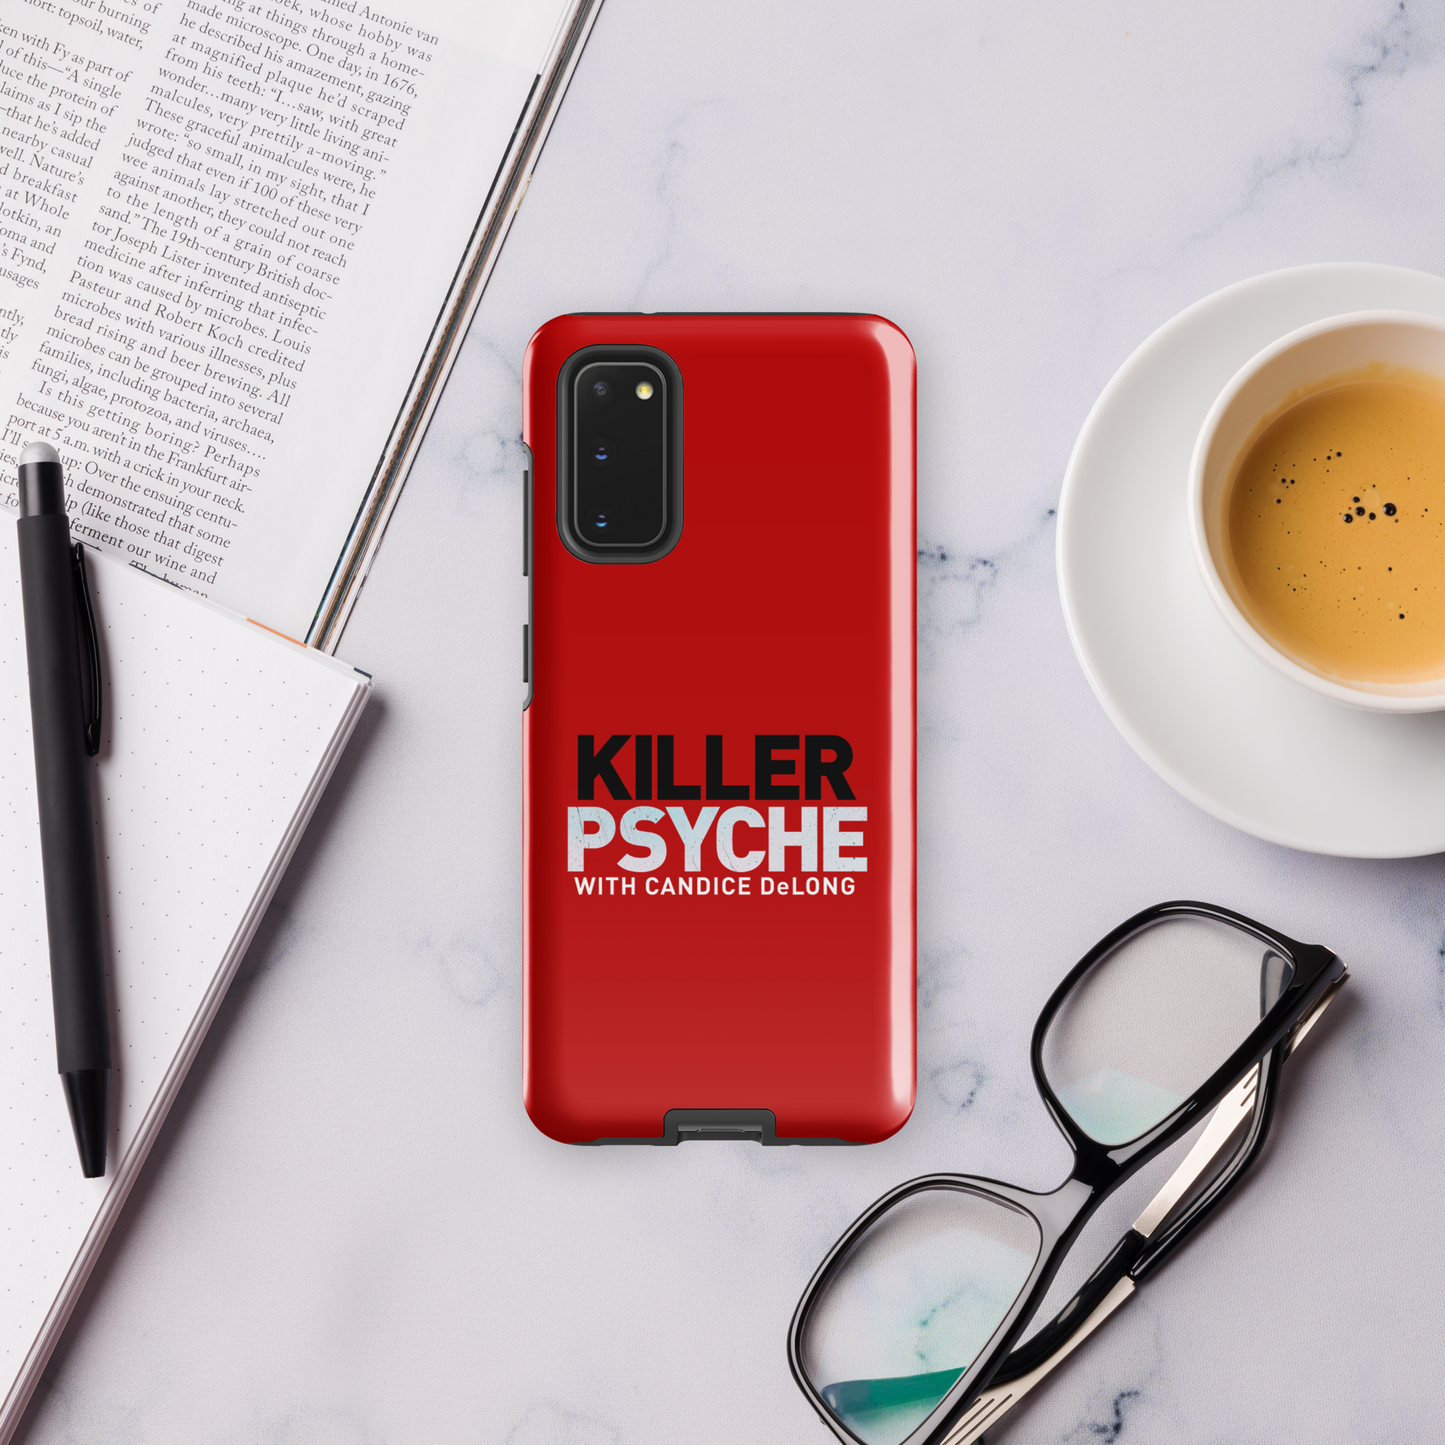 Killer Psyche Logo Tough Phone Case - Samsung